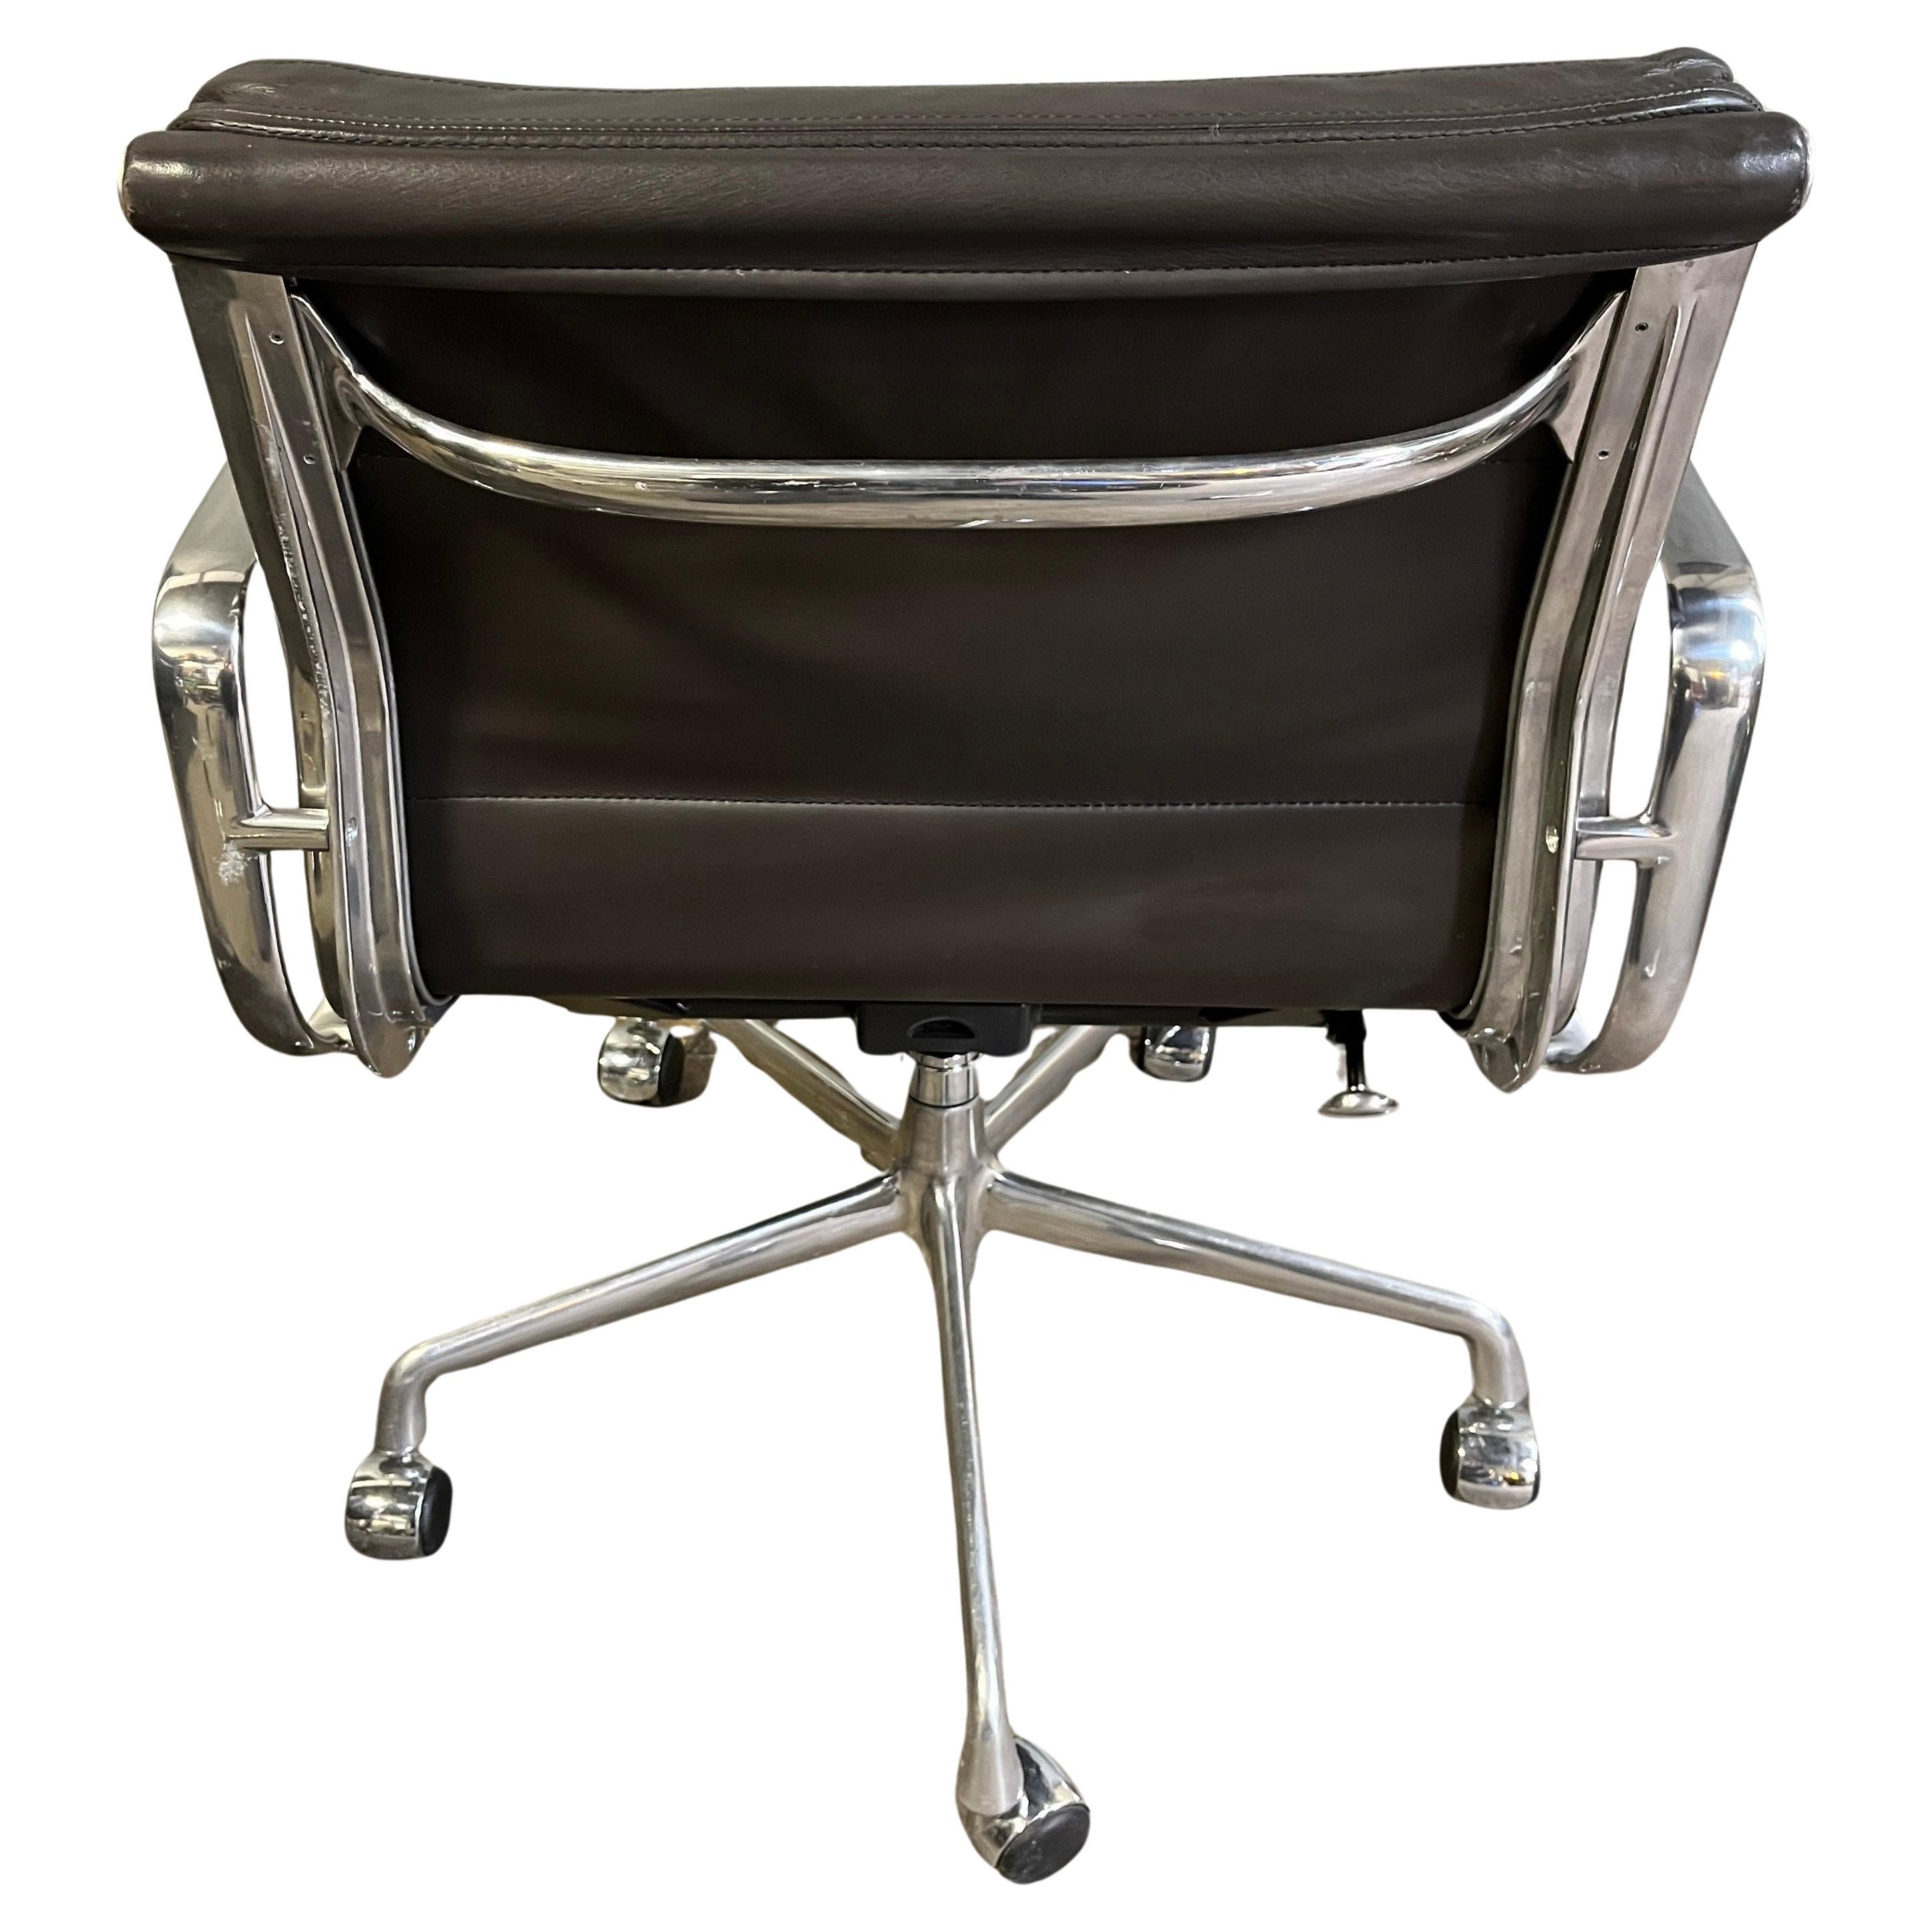 Para tu consideración, estas auténticas sillas Eames para Herman Miller vintage con cojín blando en cuero marrón oscuro. Inclinación y altura regulables con elevación manual. Estos auténticos ejemplos son iconos del diseño moderno de mediados de